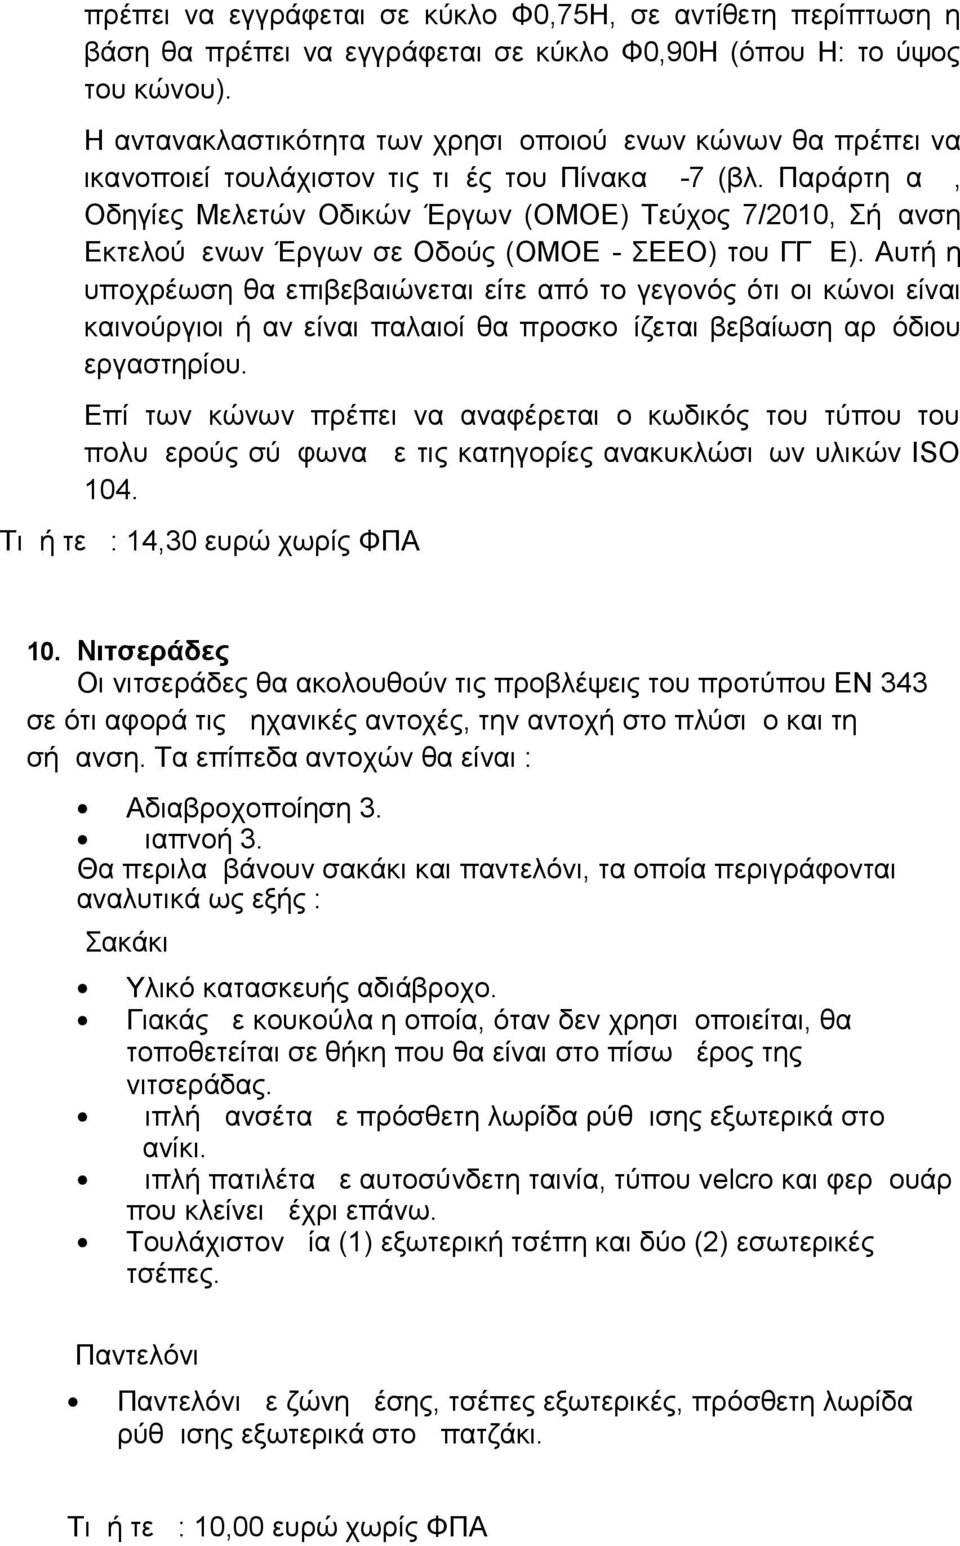 Παράρτημα Δ, Οδηγίες Μελετών Οδικών Έργων (ΟΜΟΕ) Τεύχος 7/2010, Σήμανση Εκτελούμενων Έργων σε Οδούς (ΟΜΟΕ - ΣΕΕΟ) του ΓΓΔΕ).